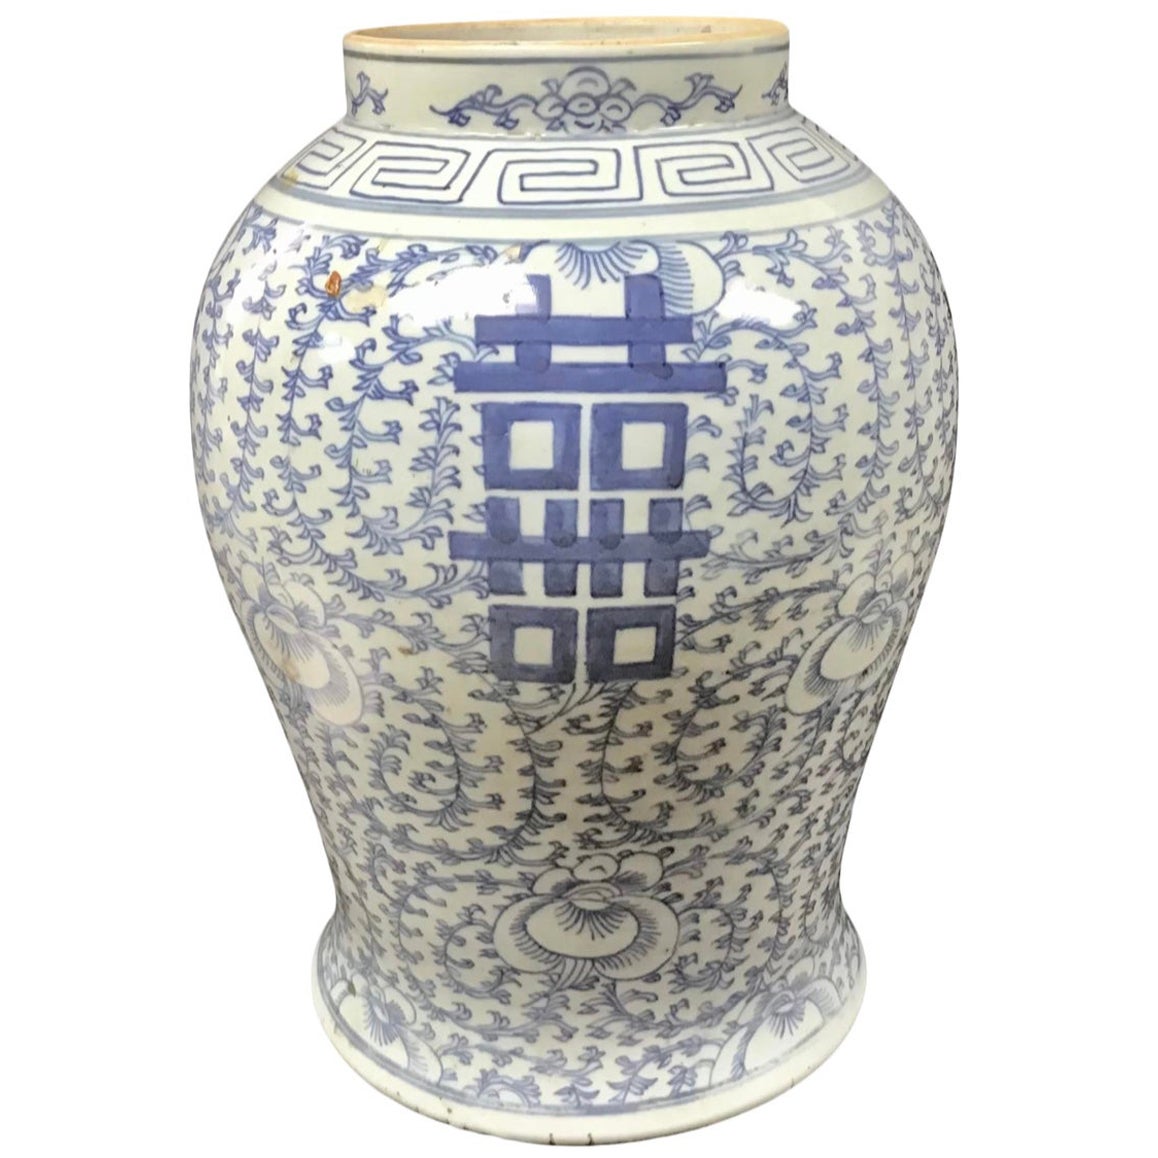 Jarre de temple à double bonheur en porcelaine chinoise bleu et blanc, vers le 19e siècle